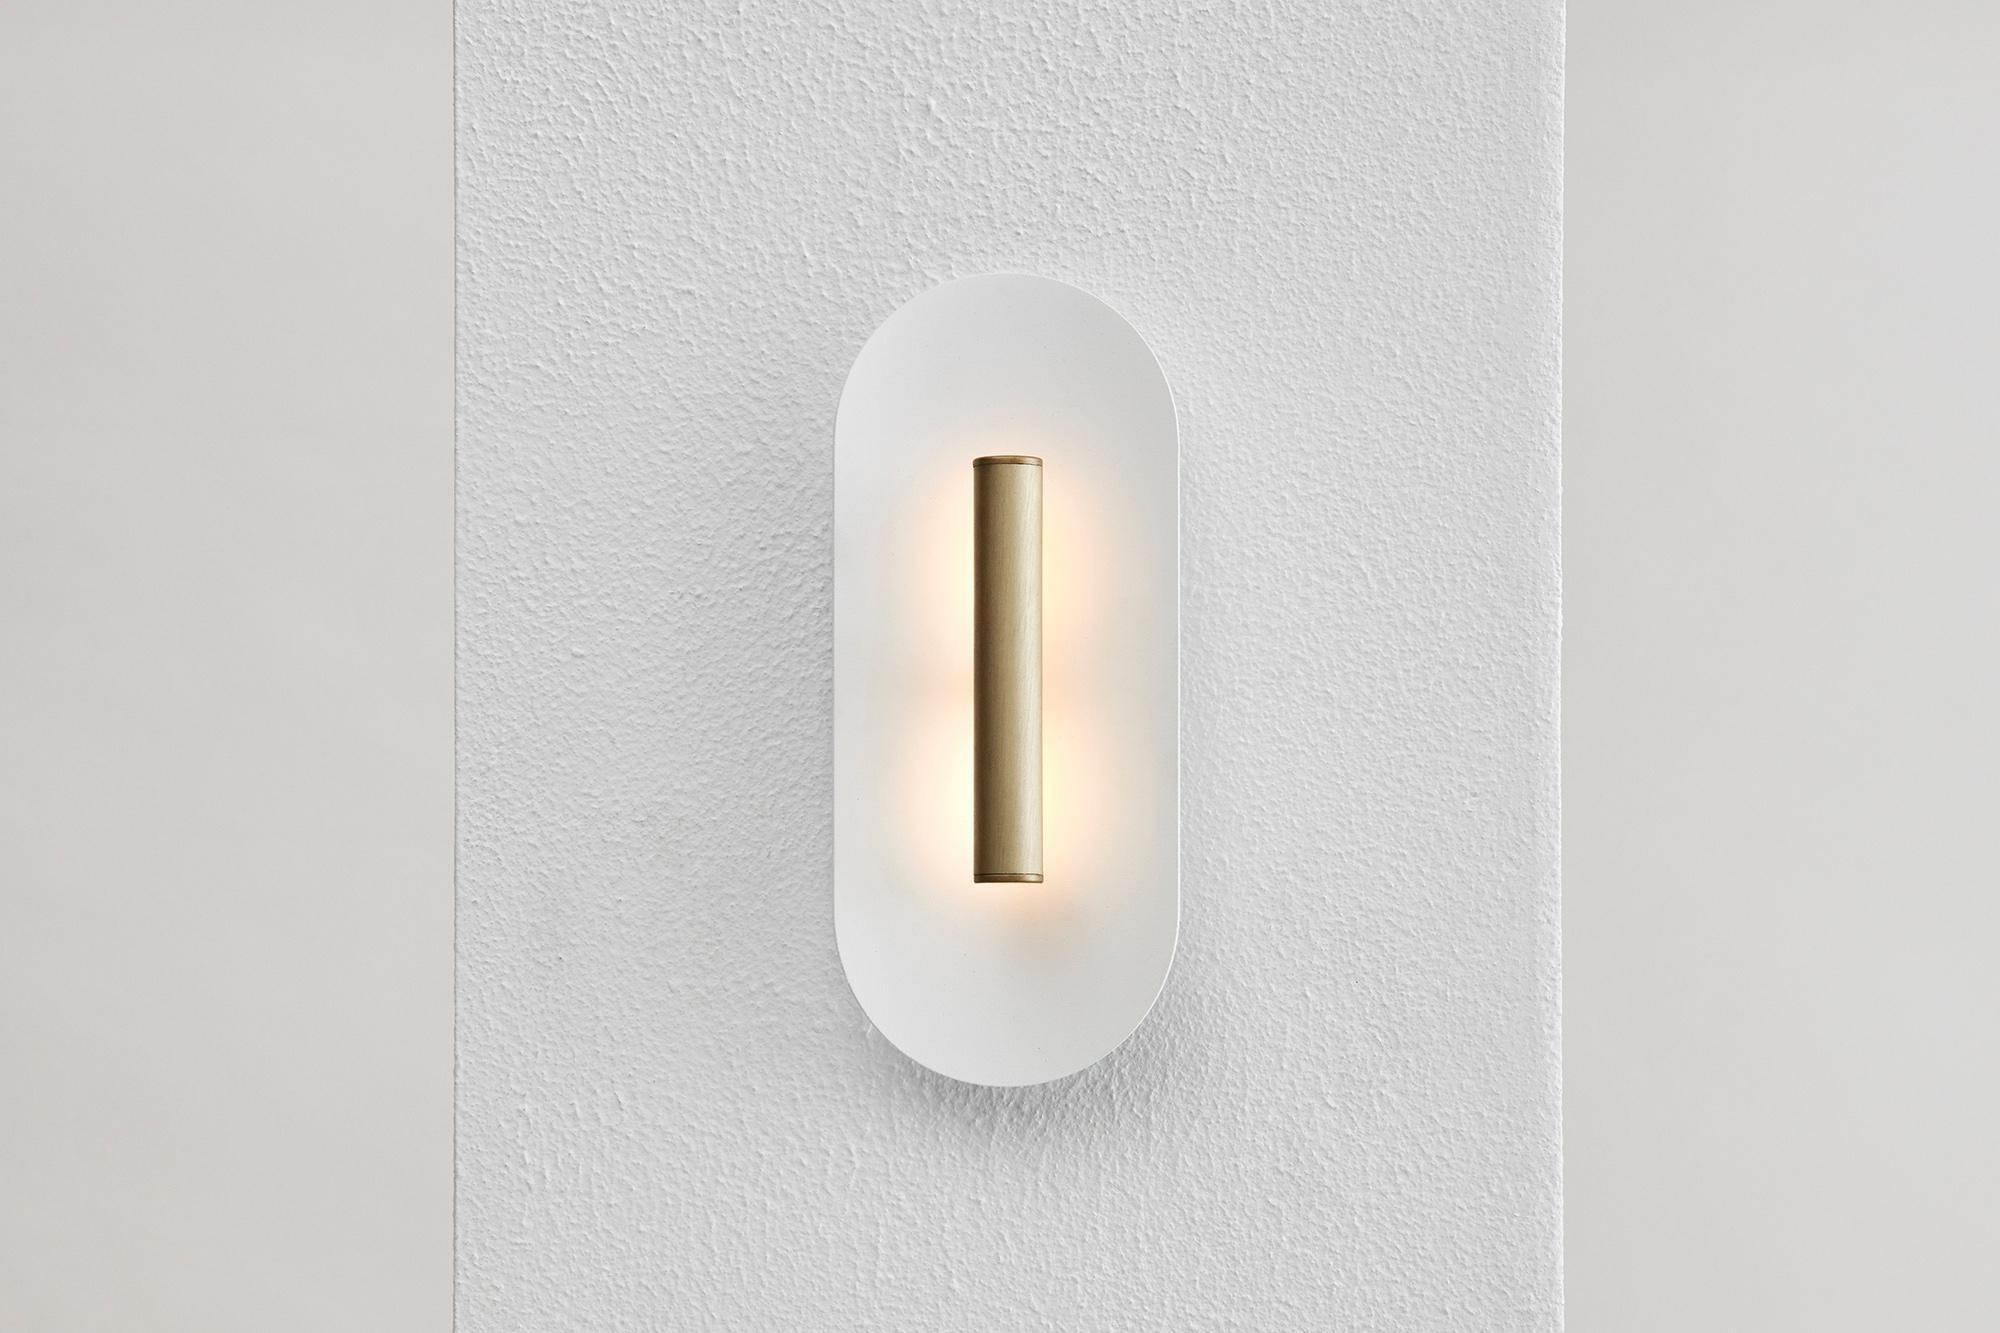 La puissante LED se reflète sur une coupelle délicatement incurvée, accentuant une pièce avec une douce lumière indirecte.
Le réflecteur texturé en aluminium blanc mat peut être assorti à l'une des trois finitions suivantes : noir anodisé, or